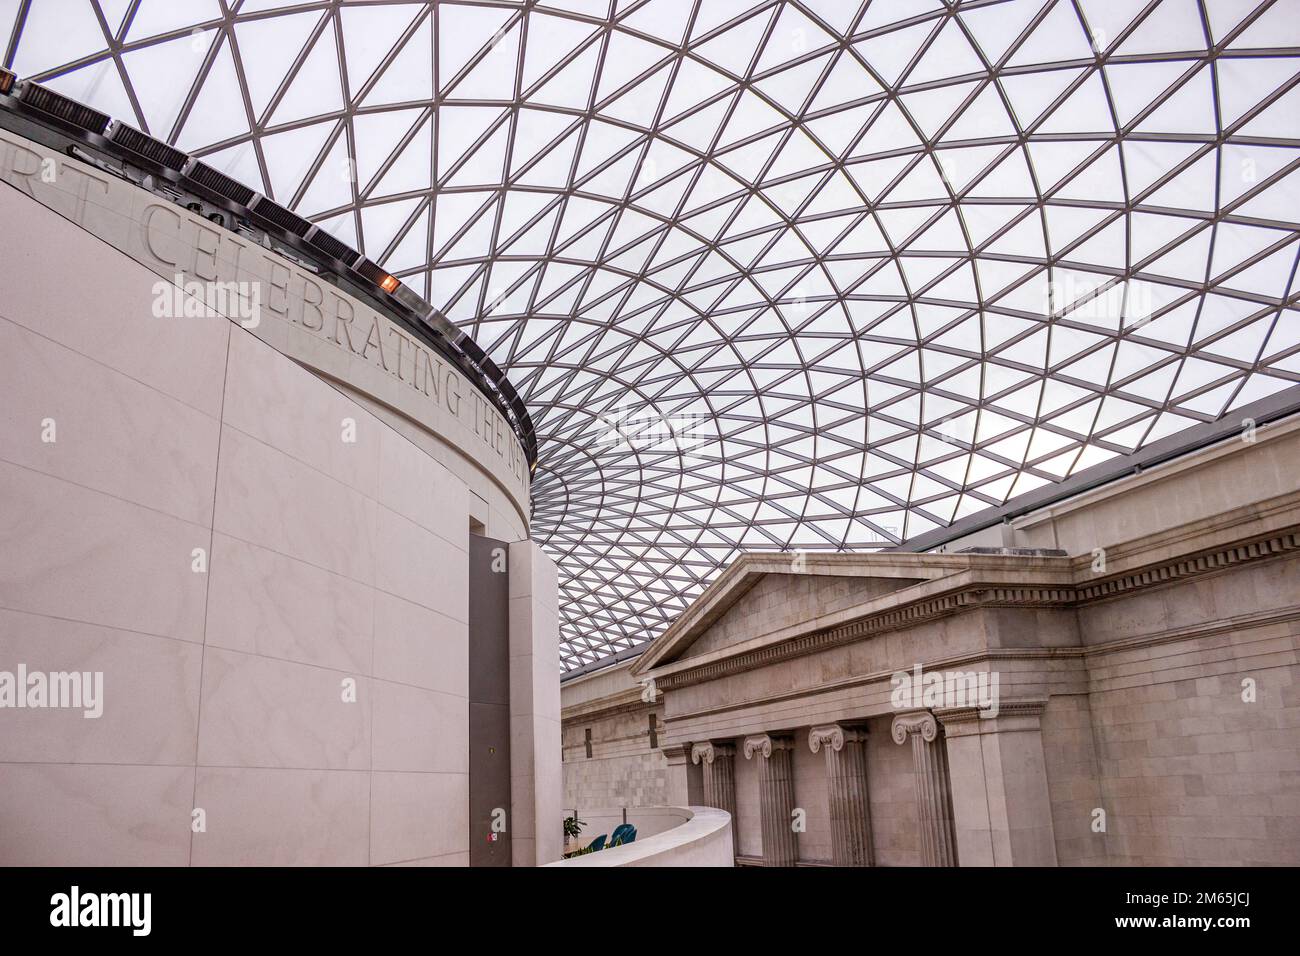 Innenansicht des Great Court im British Museum, einem öffentlichen Museum, das sich der Geschichte, Kunst und Kultur der Menschen in London widmet. Stockfoto